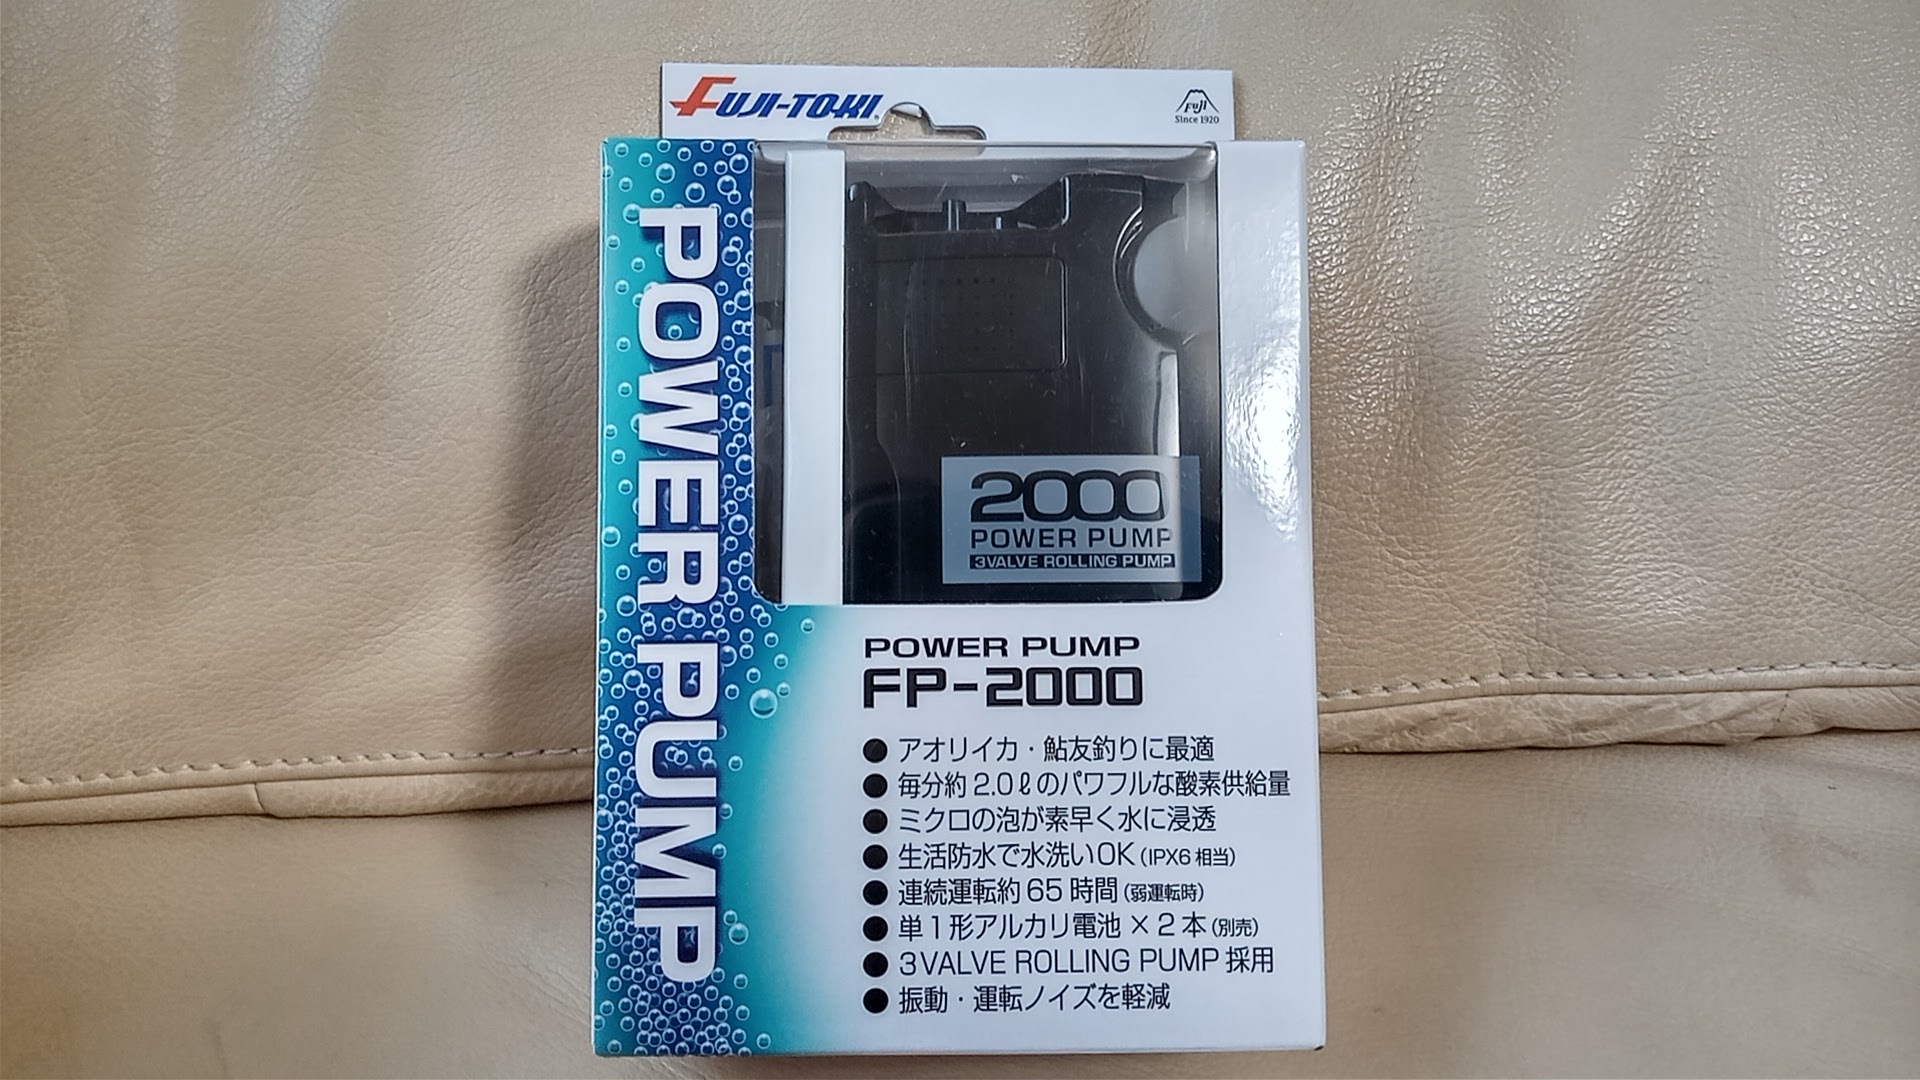 全国組立設置無料 冨士灯器 Fuji-toki パワーポンプ FP-2000 電池式エアーポンプ ブクブク hoangphugiadl.vn